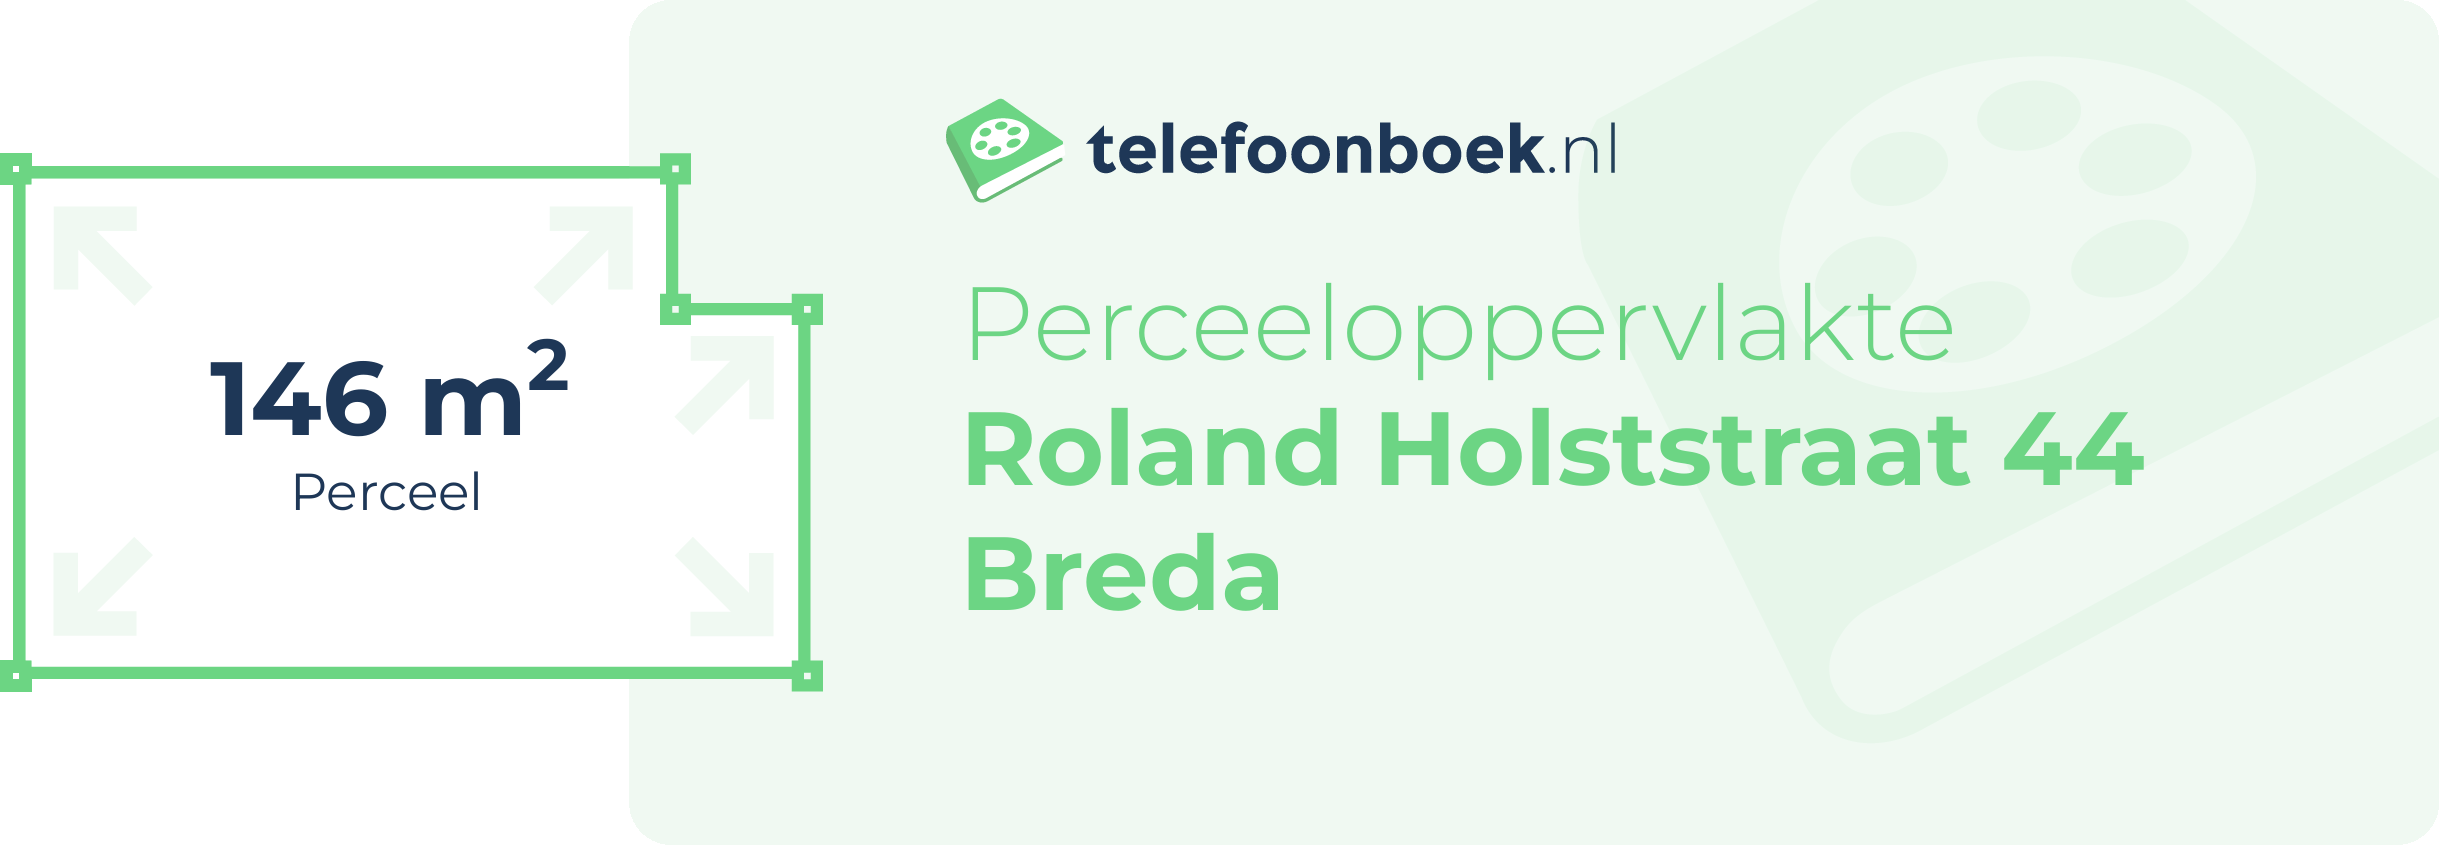 Perceeloppervlakte Roland Holststraat 44 Breda